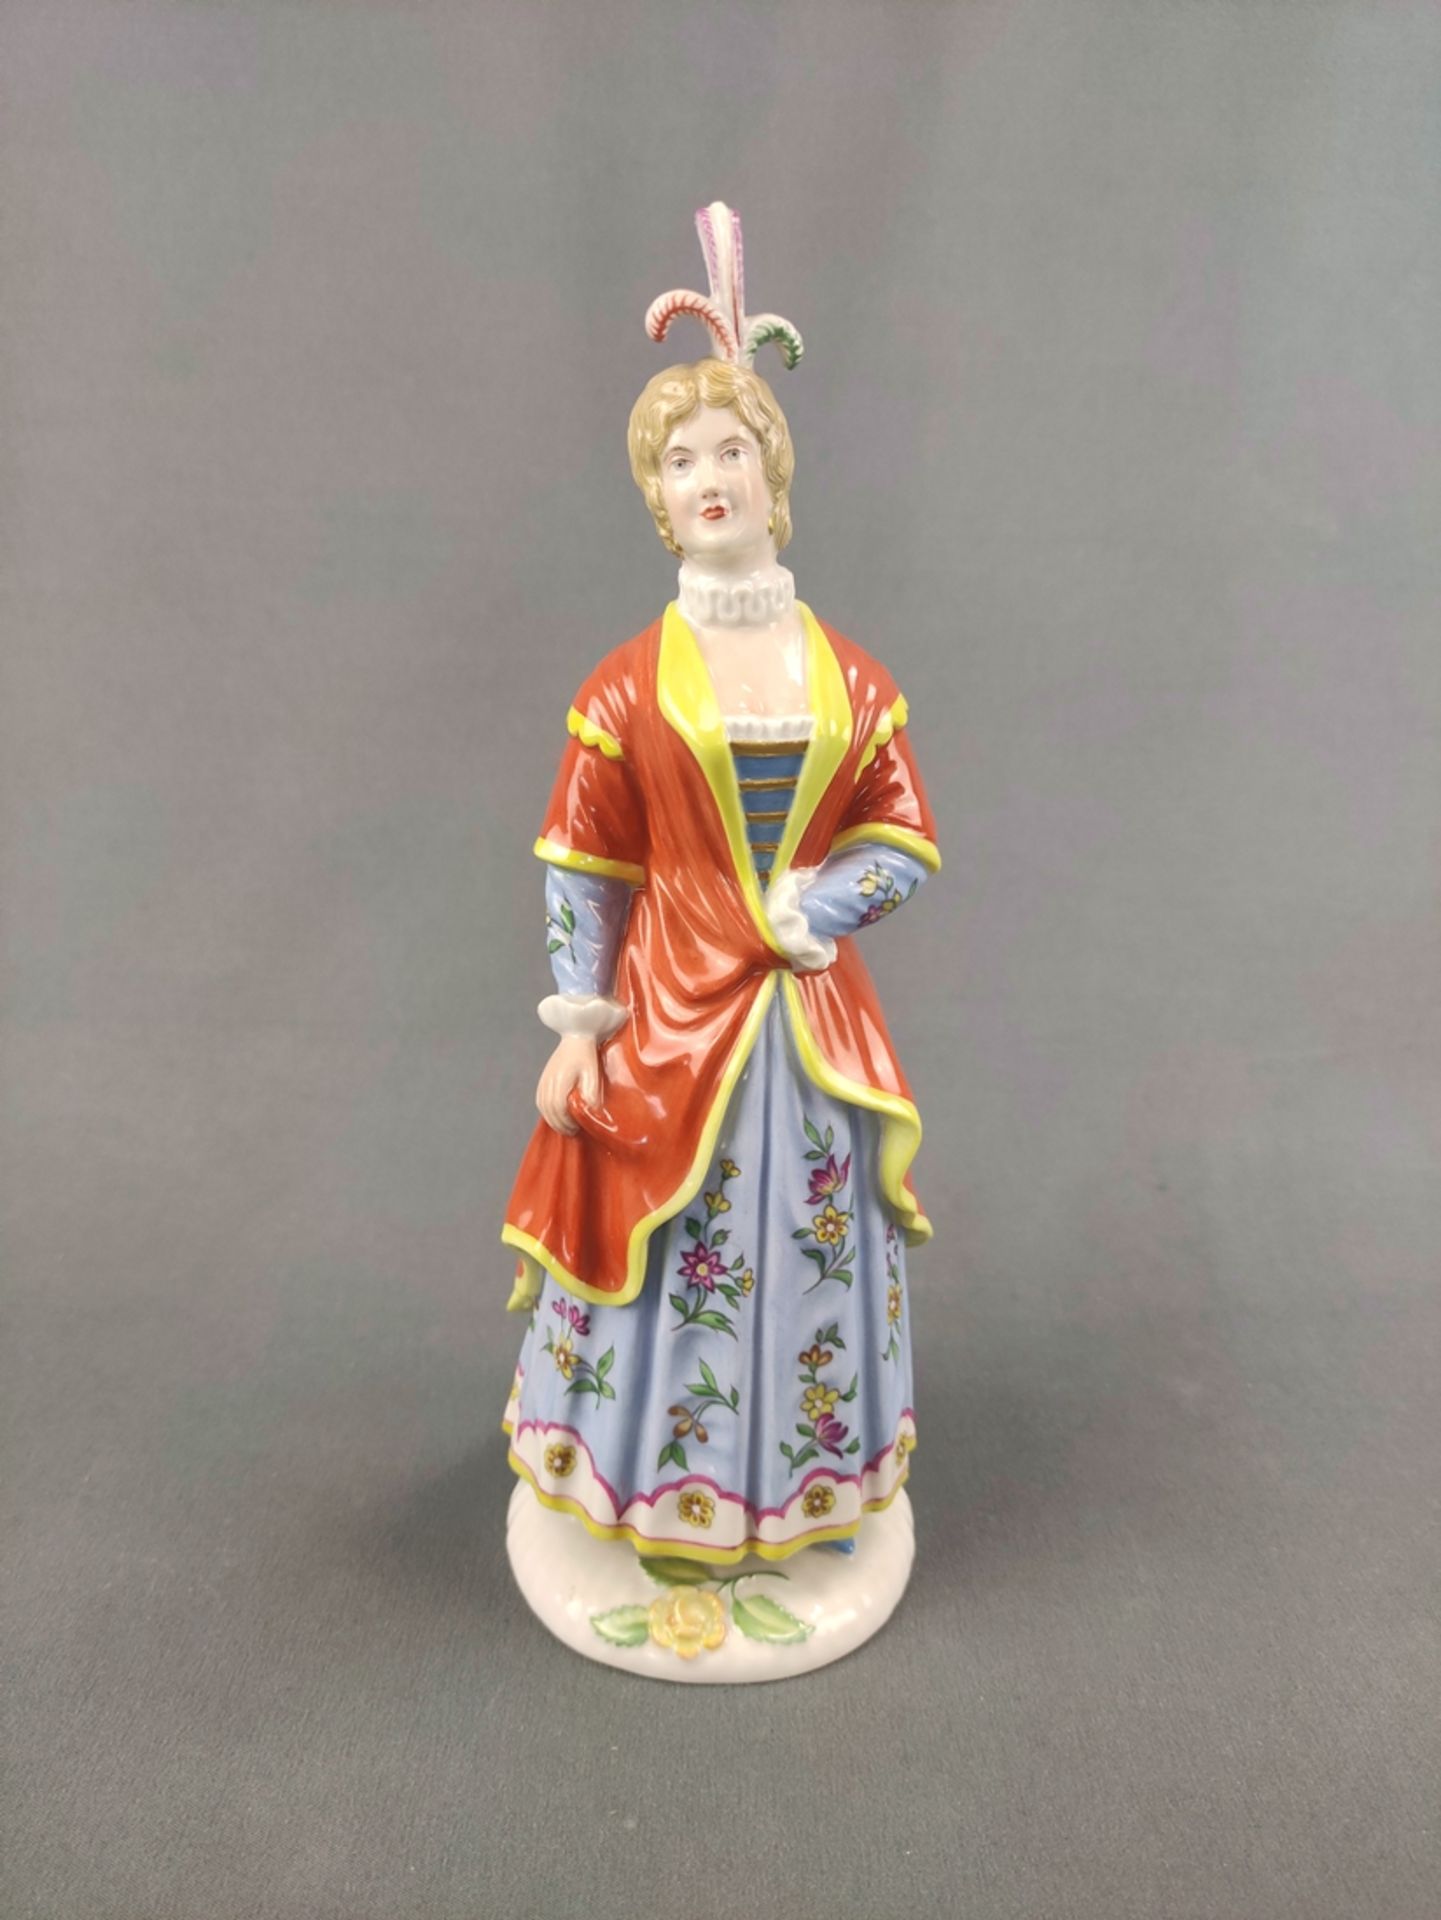 Porcelain figurine "Isabella", Fürstenberg, design by Simon Feilner (1726-1798), figurine from the